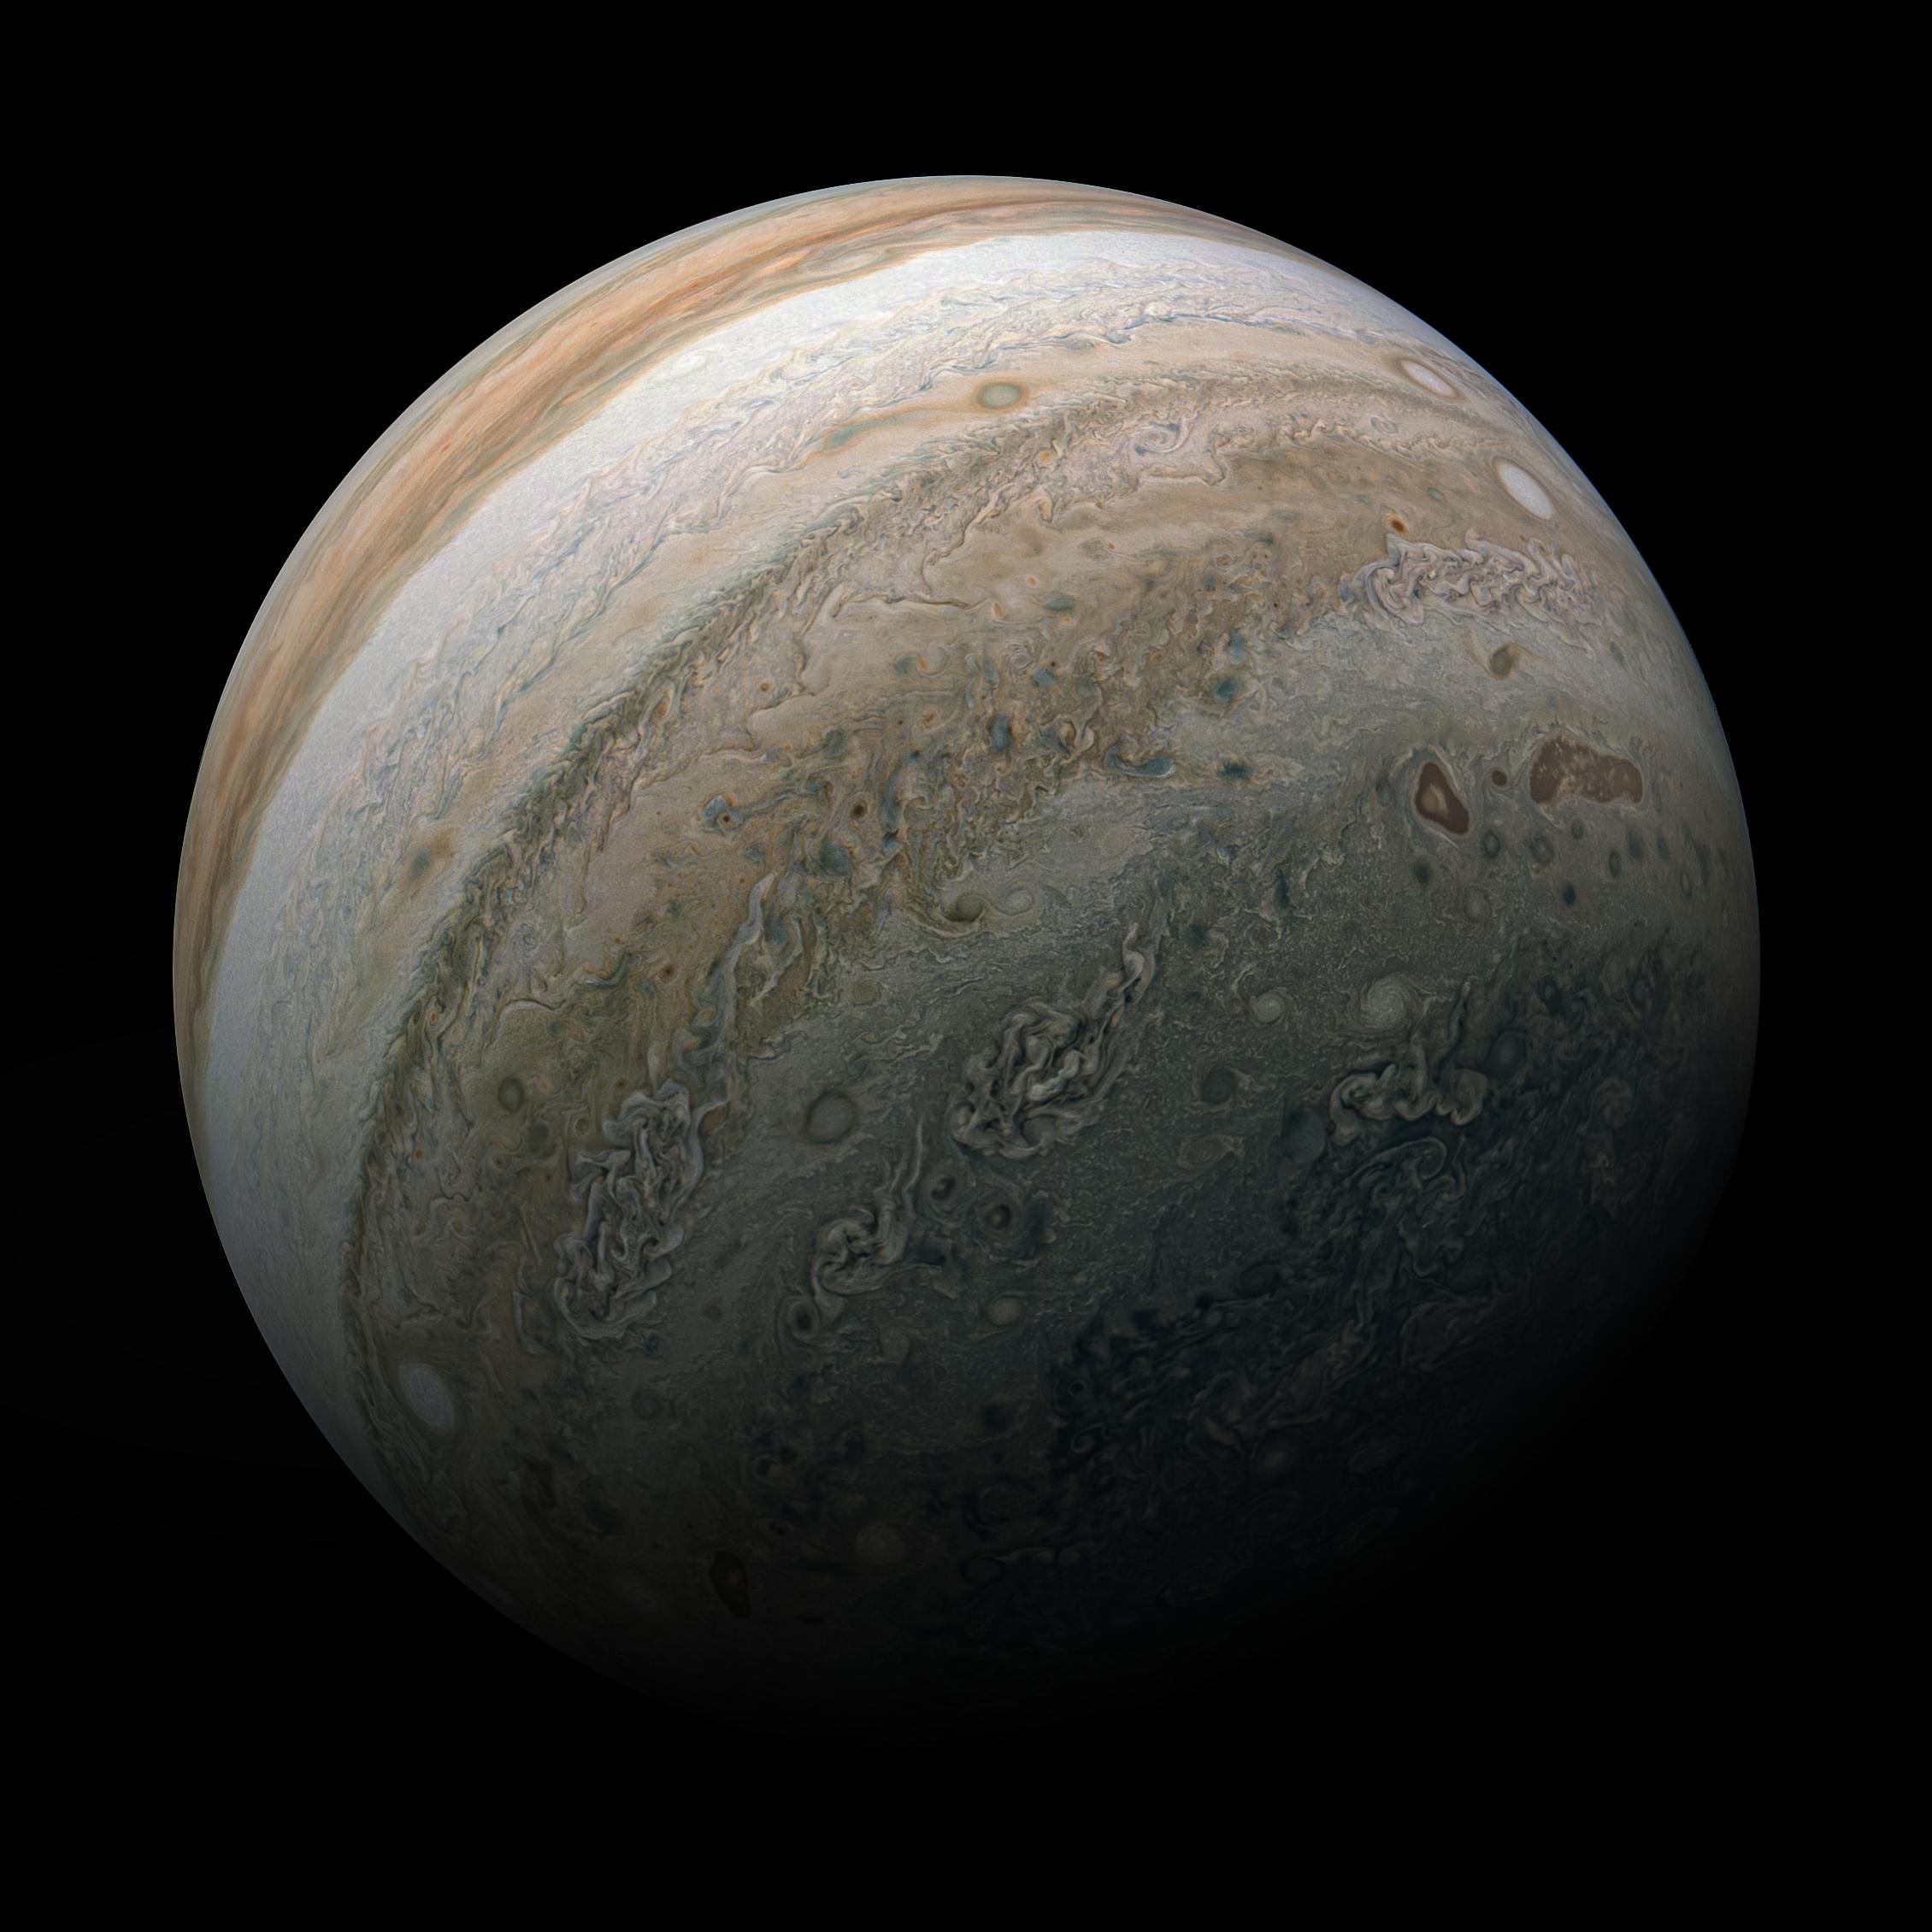 Jüpiter'i tüm ihtişamıyla gösteren bu inanılmaz fotoğrafa bir göz atın